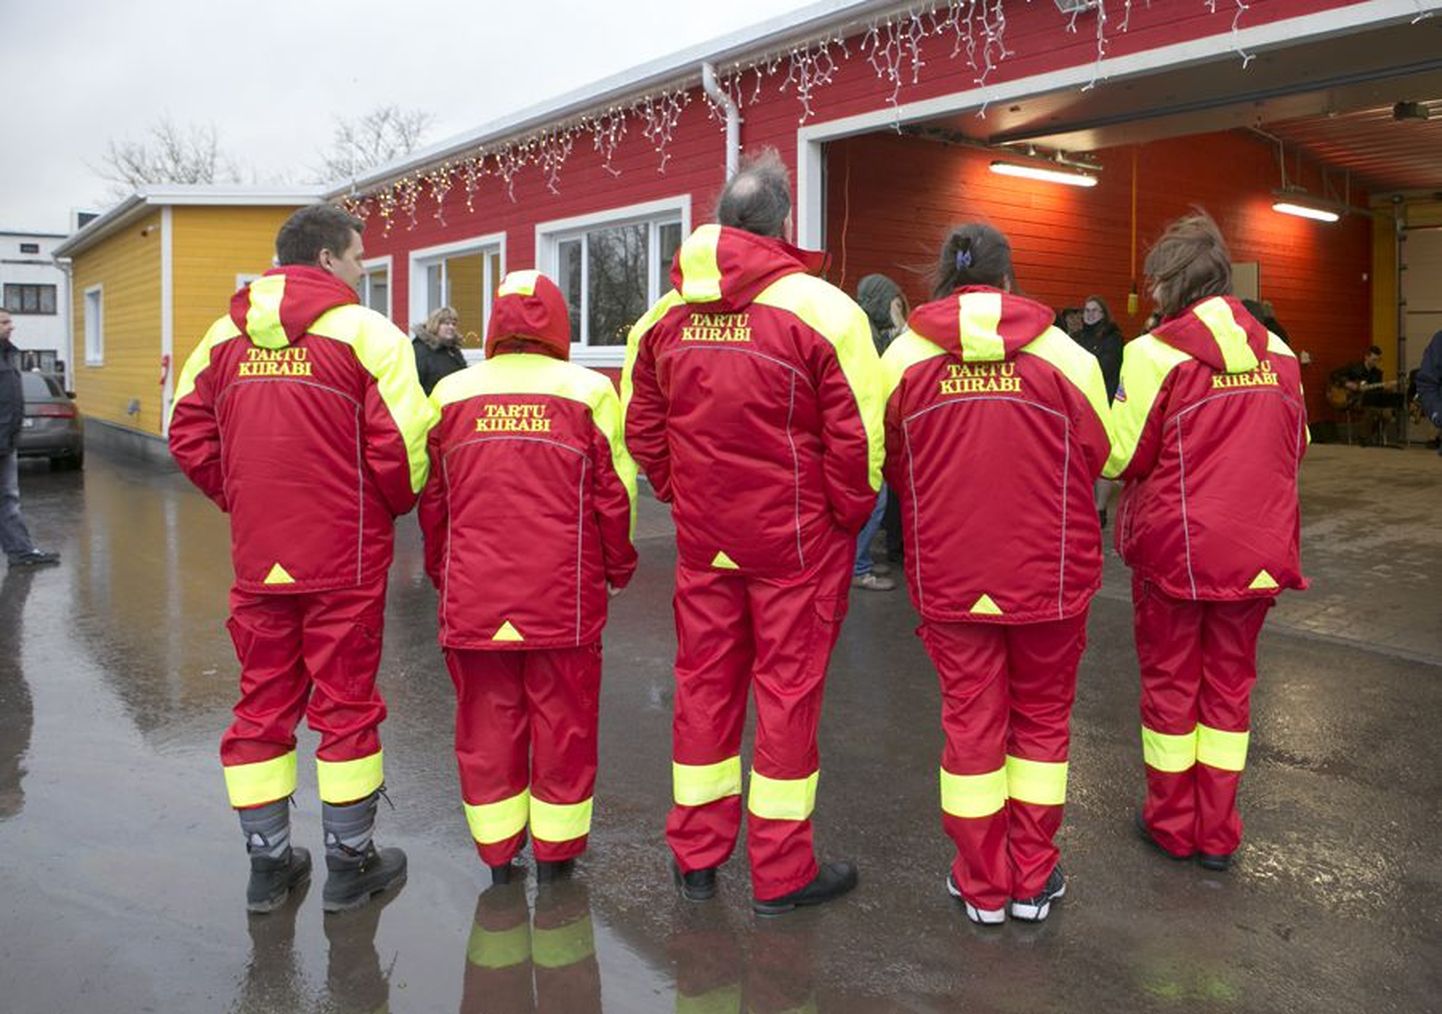 Eilsest ilutseb Viljandimaa kiirabitöötajate rõivastel sihtasutuse Tartu Kiirabi kiri. Inimesed rõivaste sees on valdavalt siiski needsamad, kes olid seni Viljandi haigla palgal.